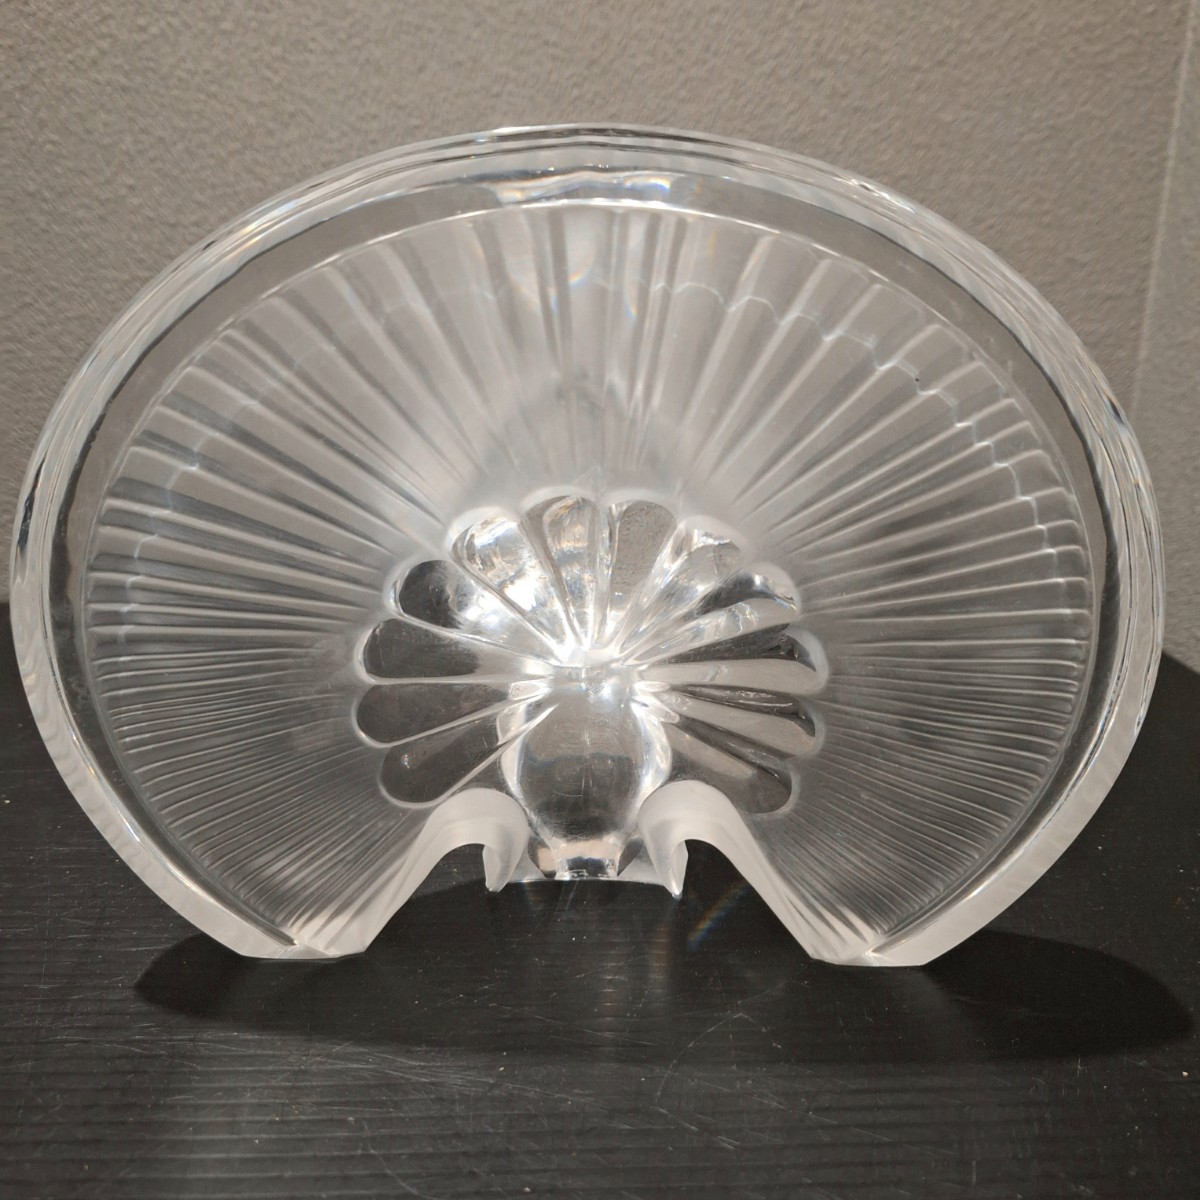 D(0226c2) Daum France ドーム フランス 孔雀 クジャク 置物 高さ約18cm クリスタルガラス ガラス工芸 オブジェ インテリア_画像4